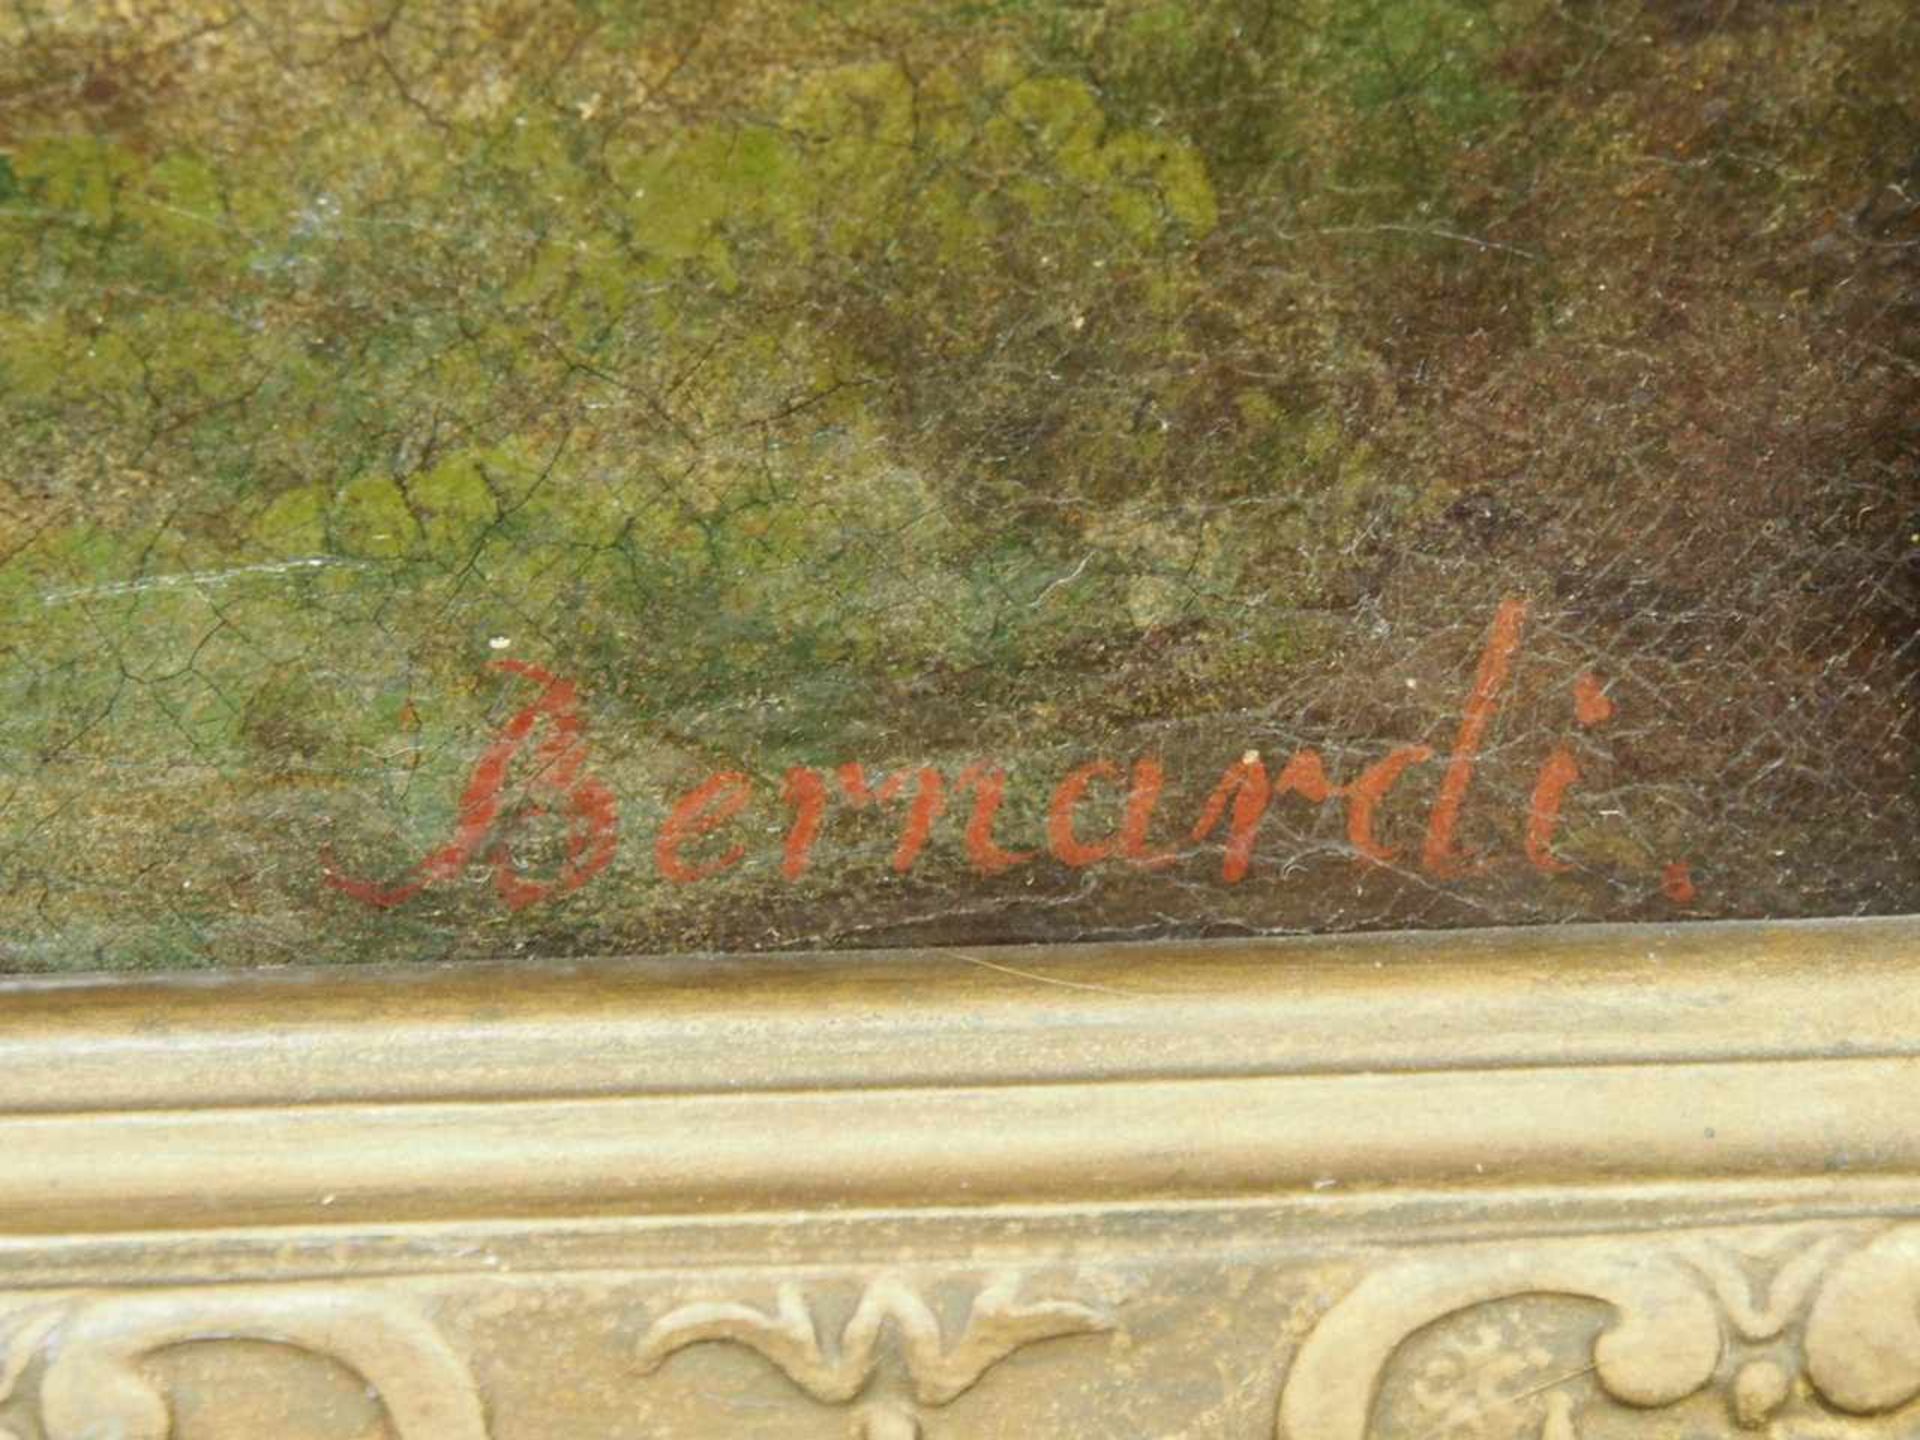 BERNARDI, Joseph1826-1907Im Berner OberlandÖl auf Leinwand, signiert unten rechts, 53 x 88 cm, - Bild 3 aus 3